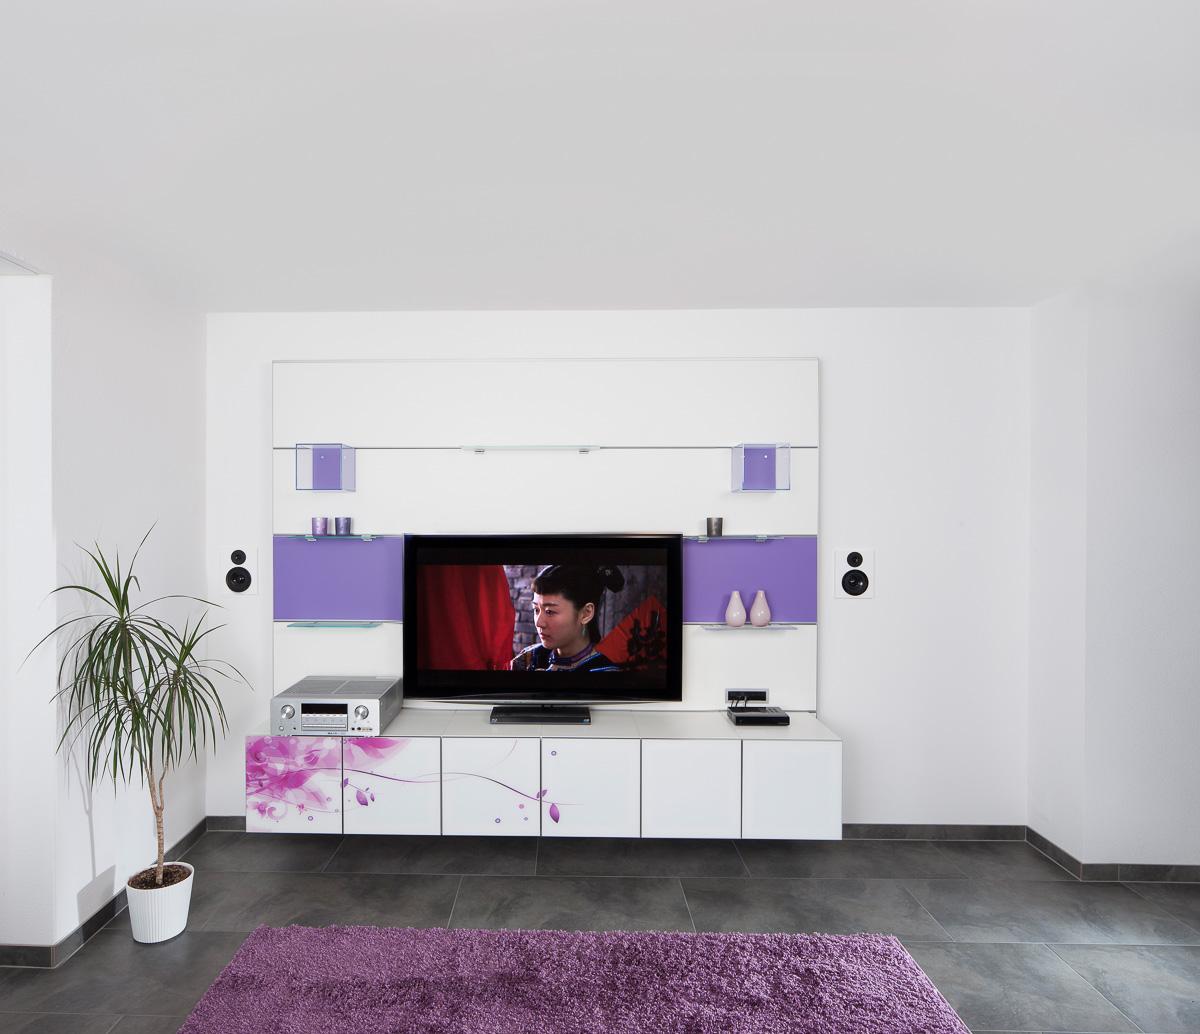 Paneelsystem Wohnzimmer #wohnwand #empfangsbereich ©HWD GmbH